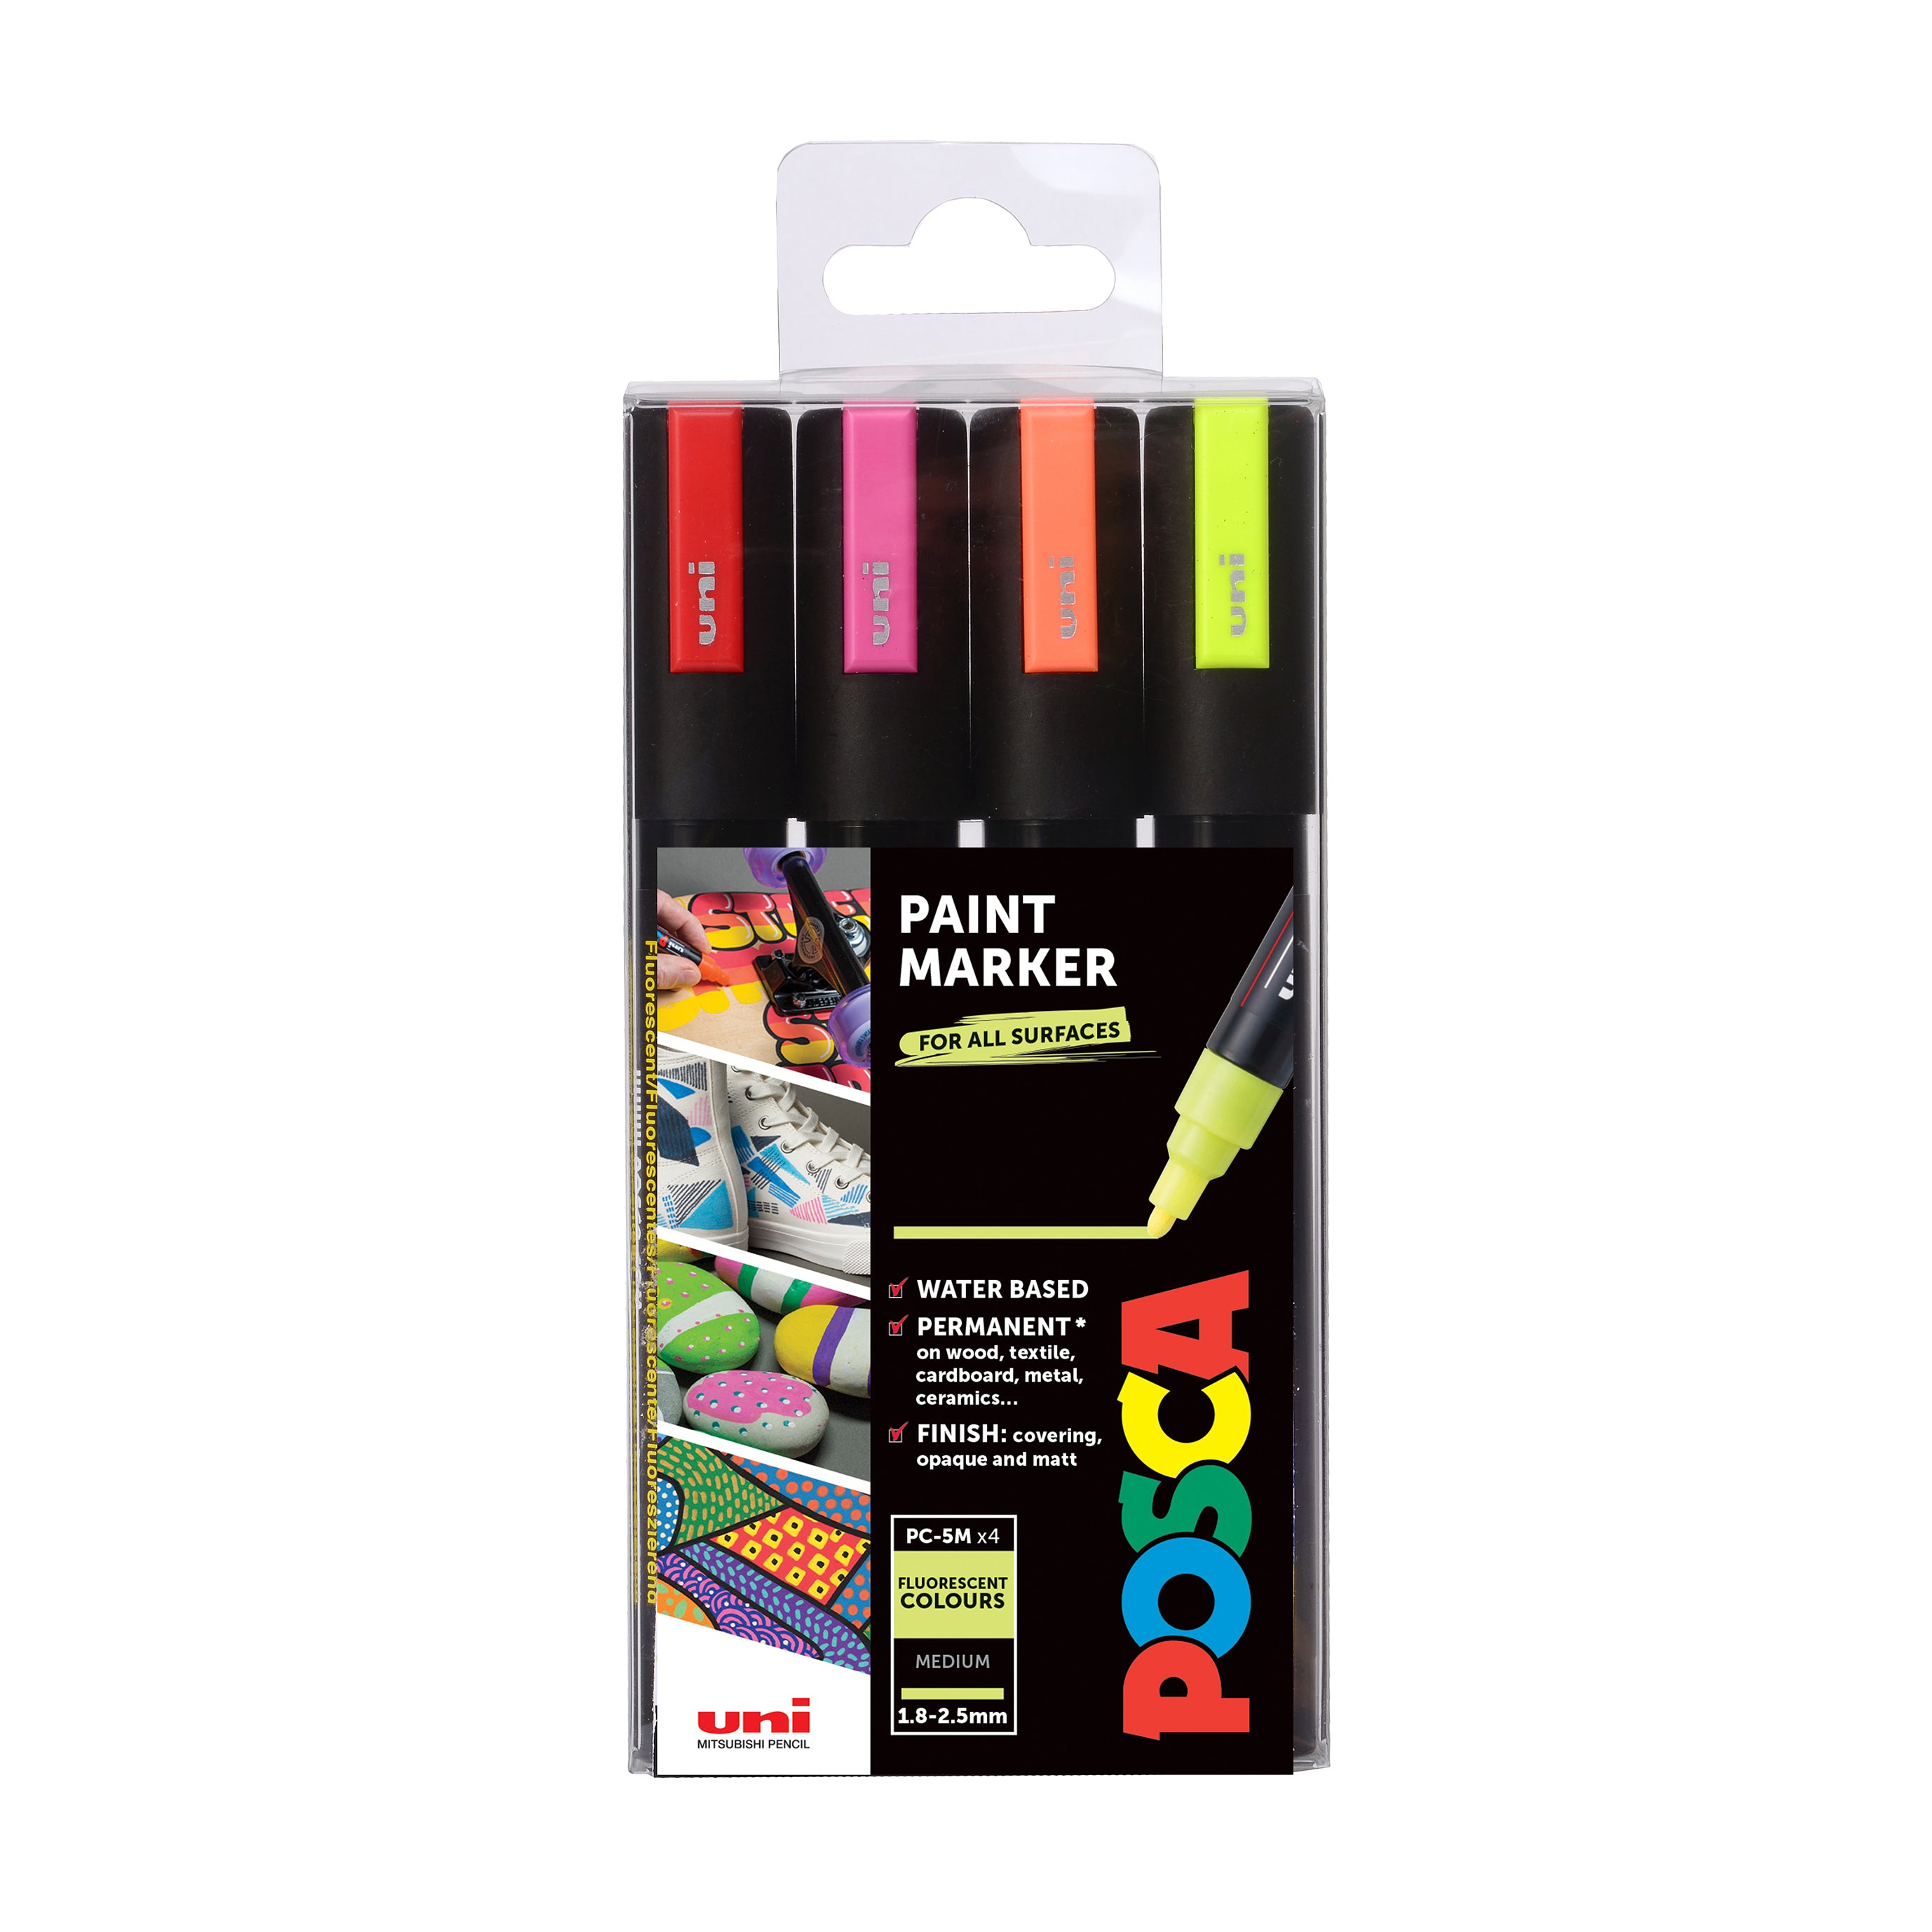 POSCA Paint Pens PC-5M 1.8-2.5  PaperStory - The Great Little Art Shop